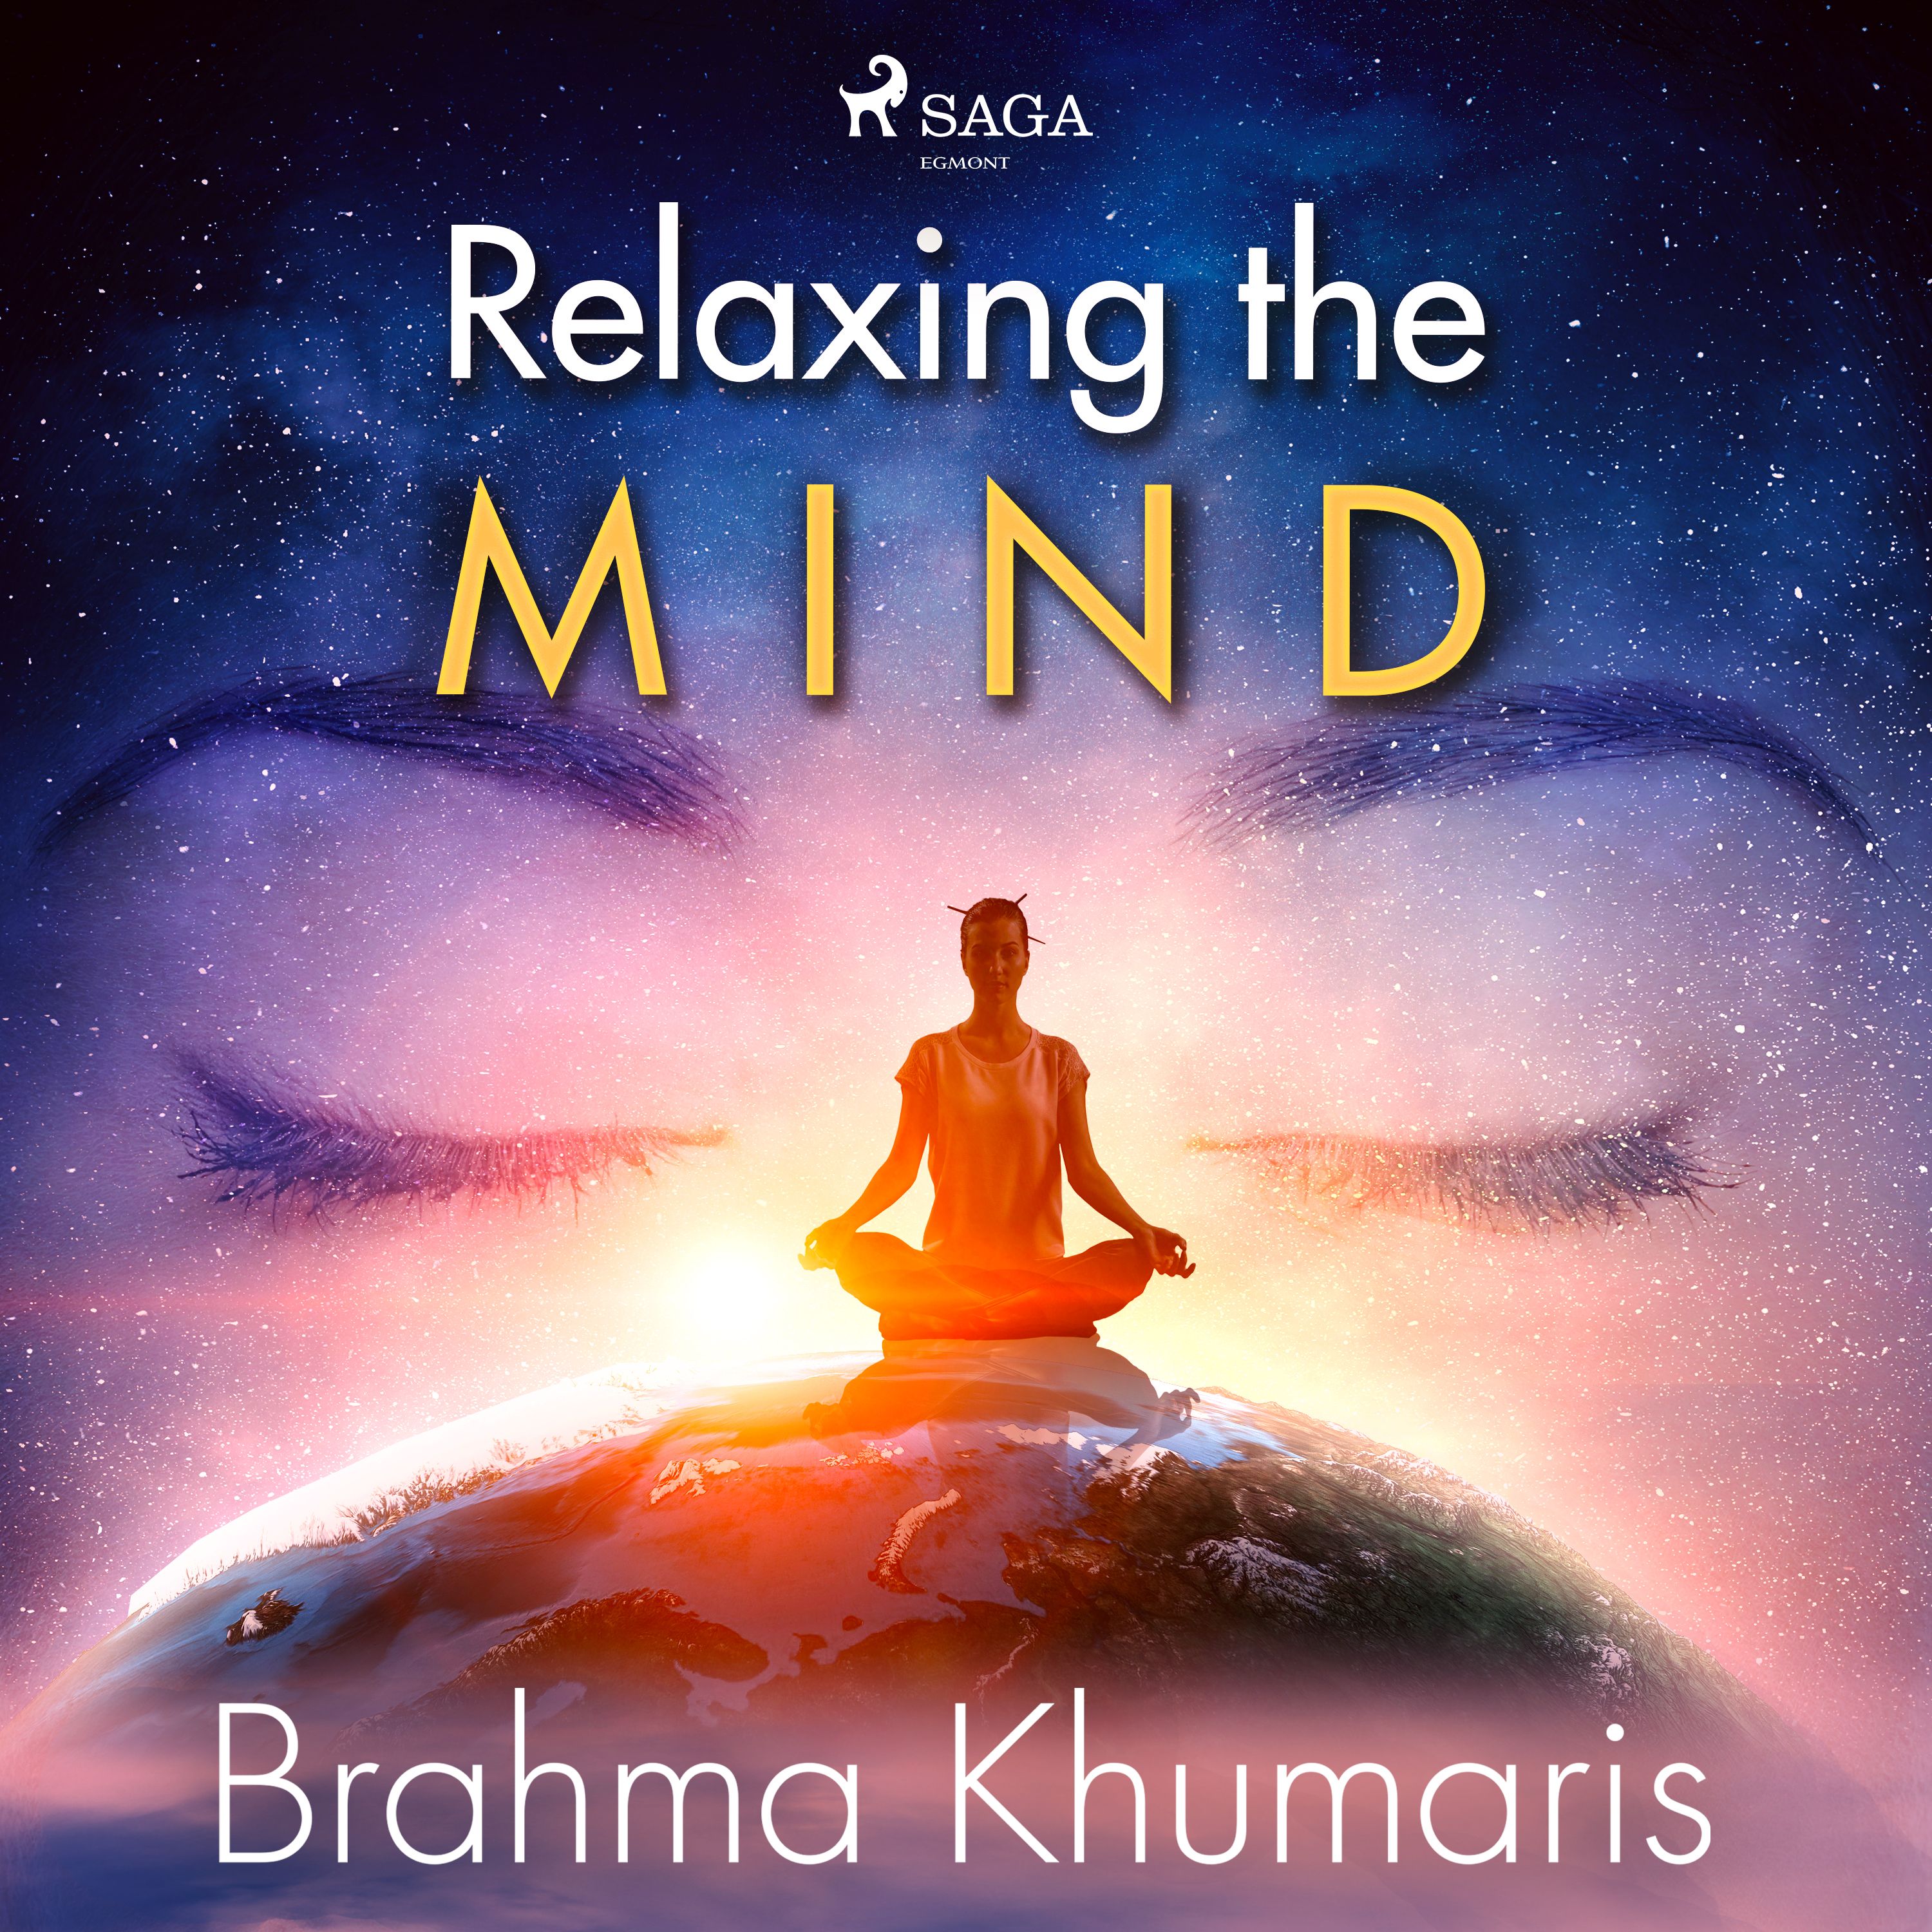 Relaxing the Mind, lydbog af Brahma Khumaris